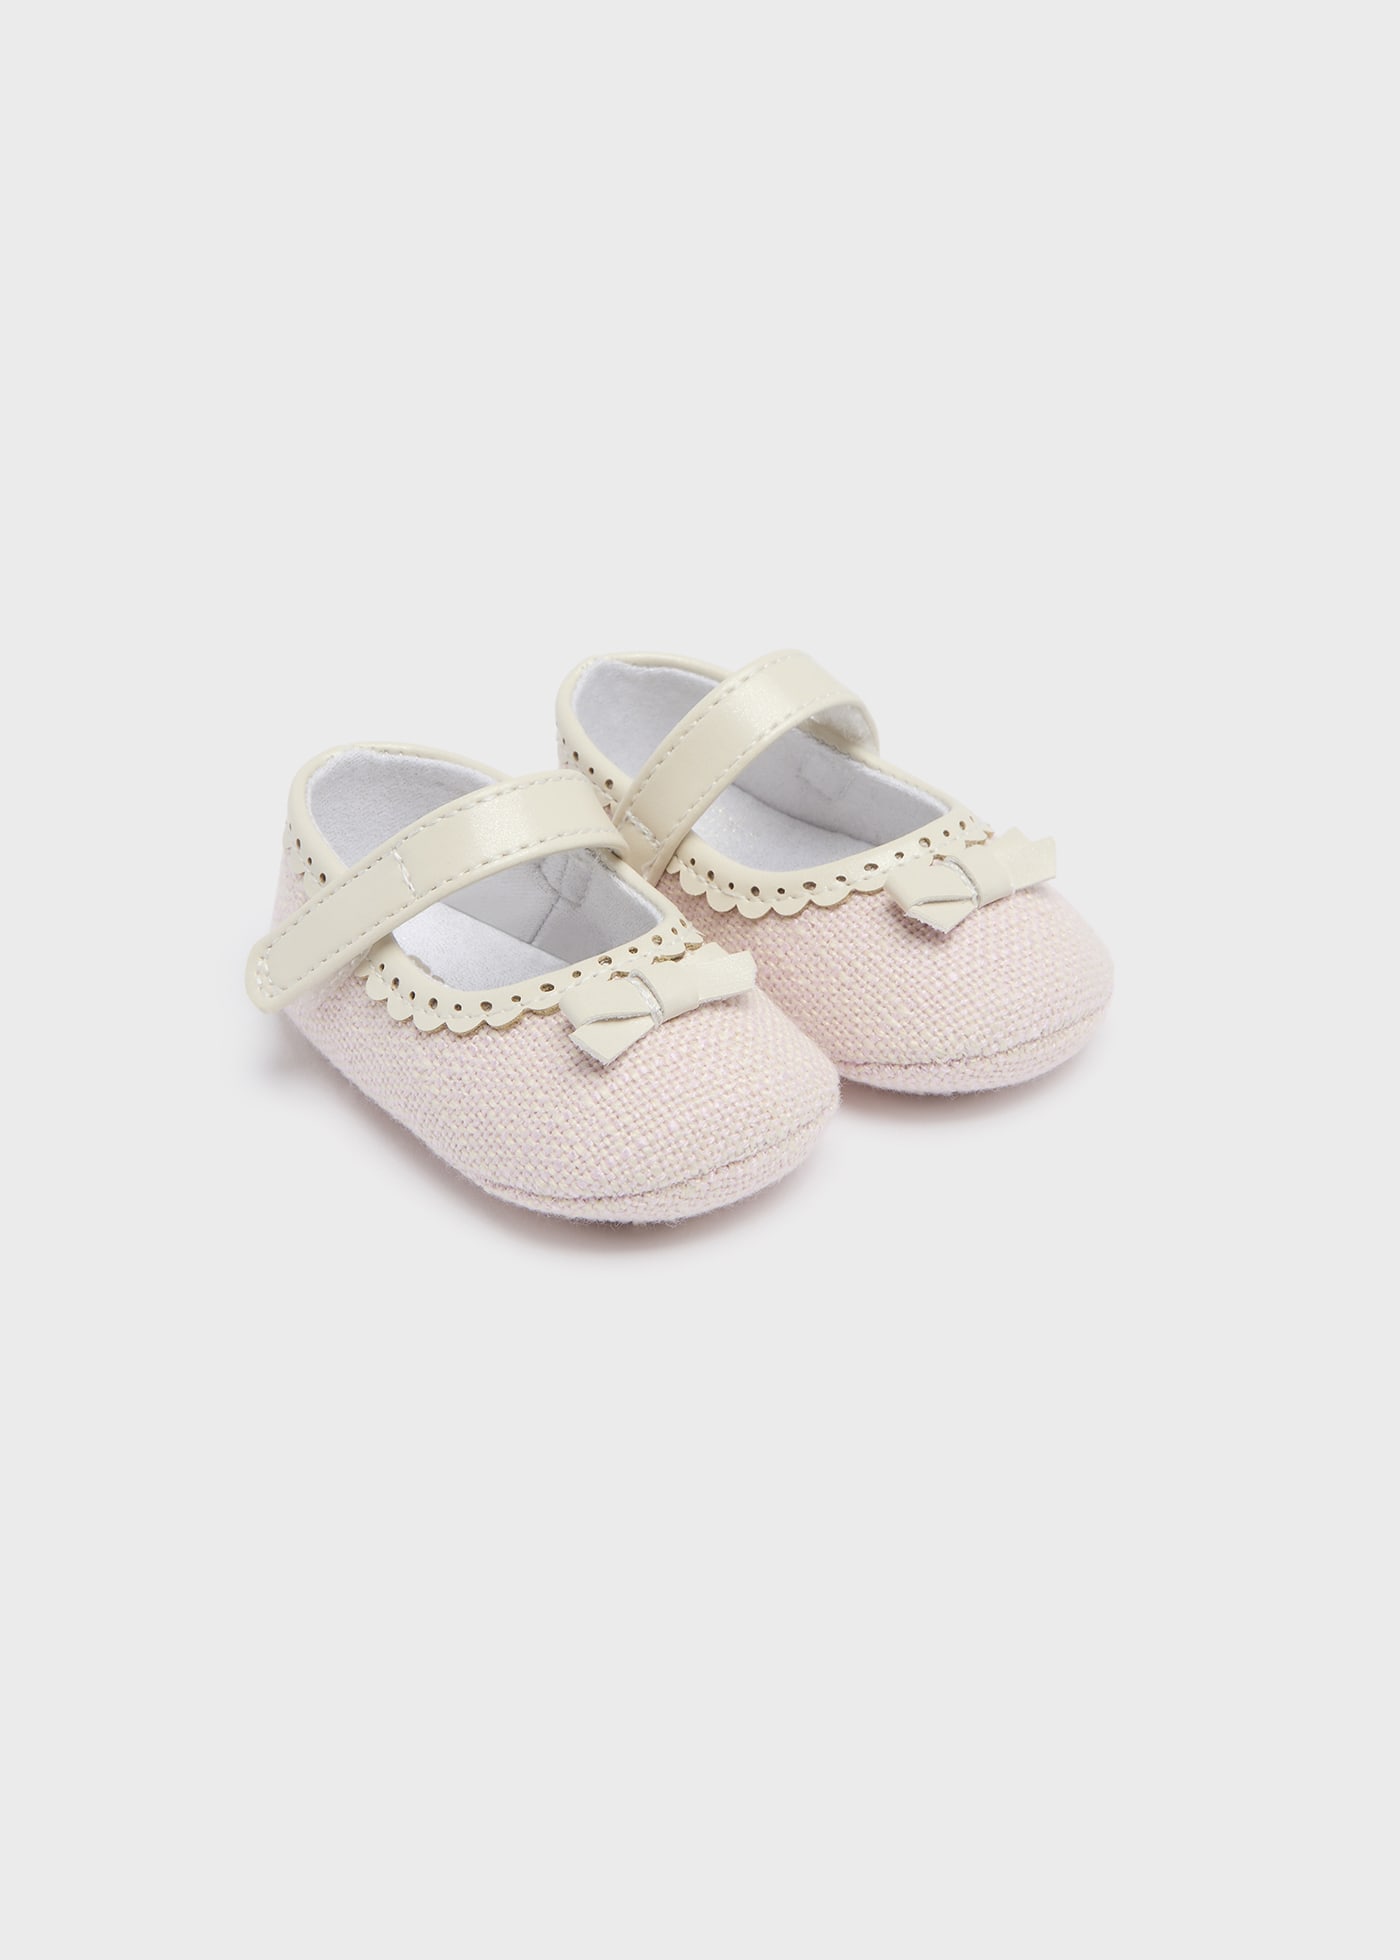 Zapatos textura recién nacido